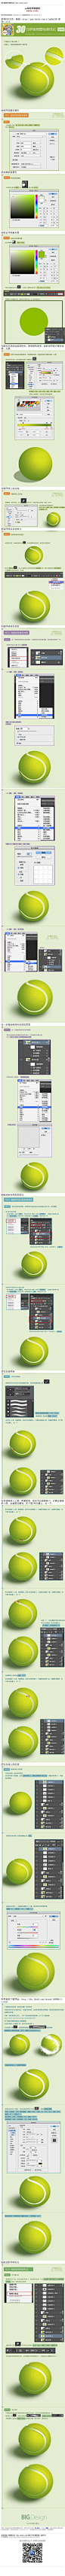 #鼠绘教程#《photoshop鼠绘网球教程》 30分钟搞定网球，由于教程详细，步骤比较多，所以教程图片略大，请耐心等待 教程网址：http://www.16xx8.com/plus/view.php?aid=135376&pageno=all